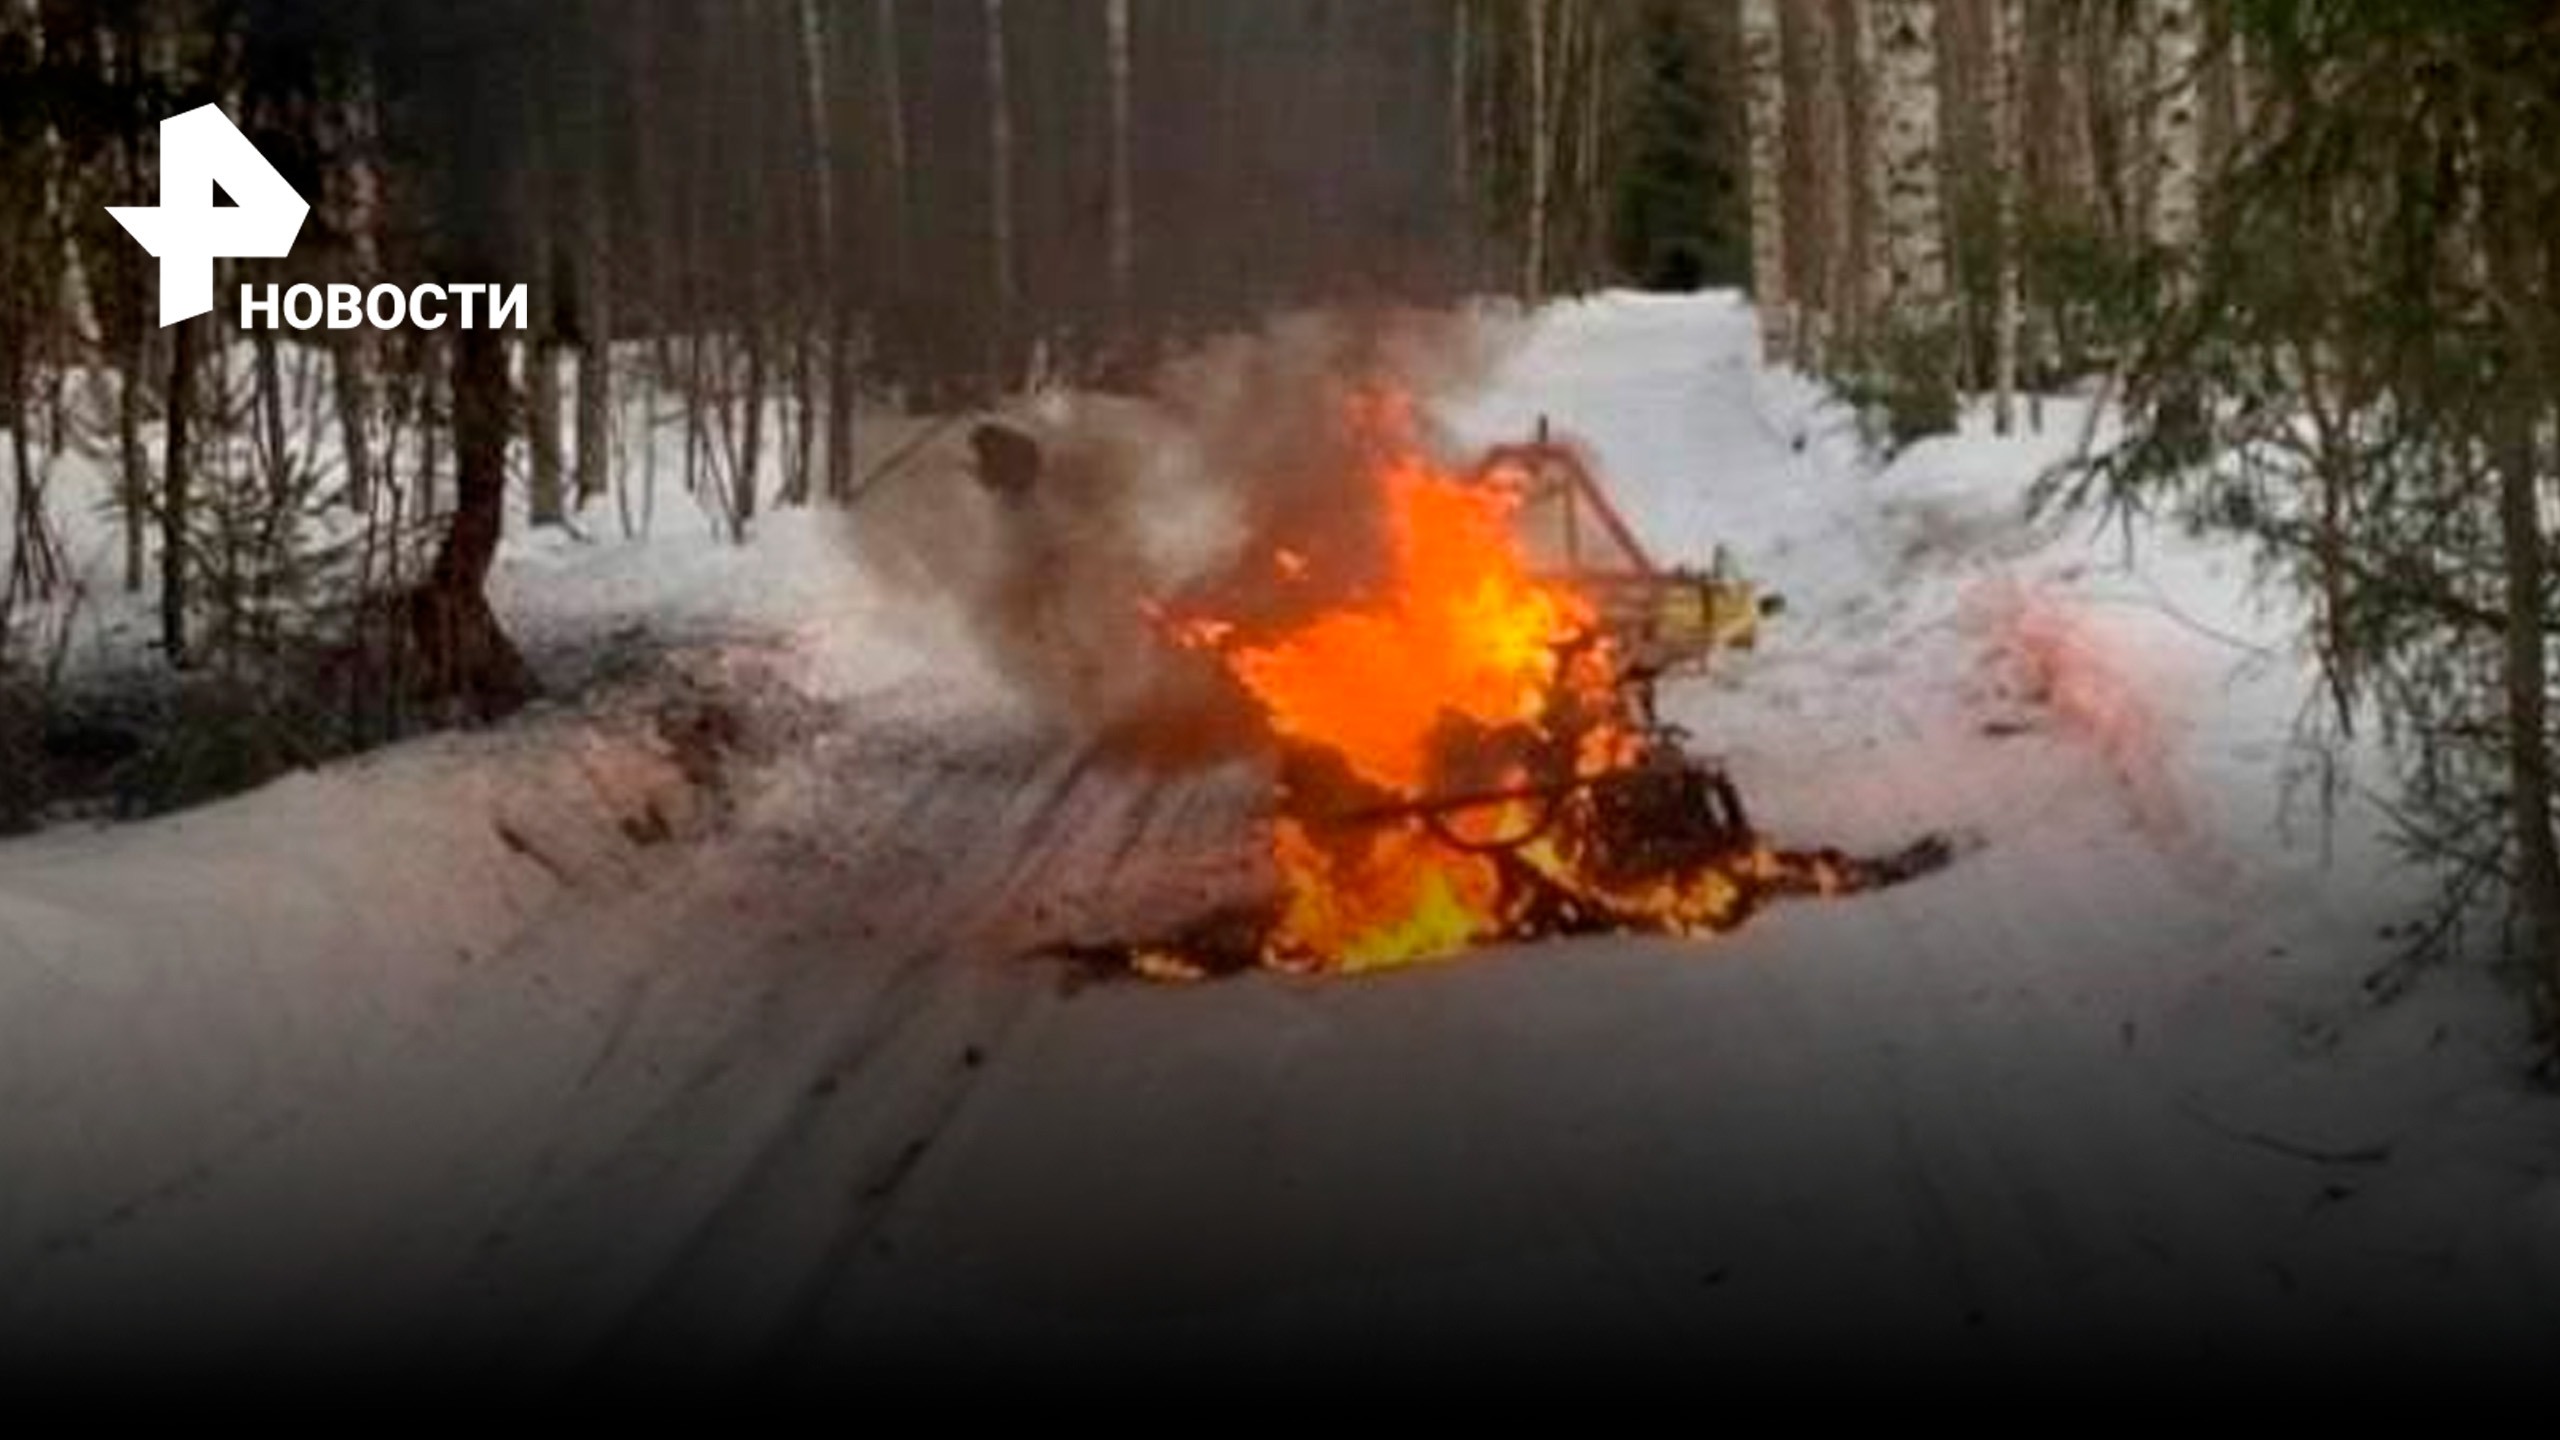 Взорвался снегоход на лыжной трассе - водителя залило горящим бензином / РЕН Новости